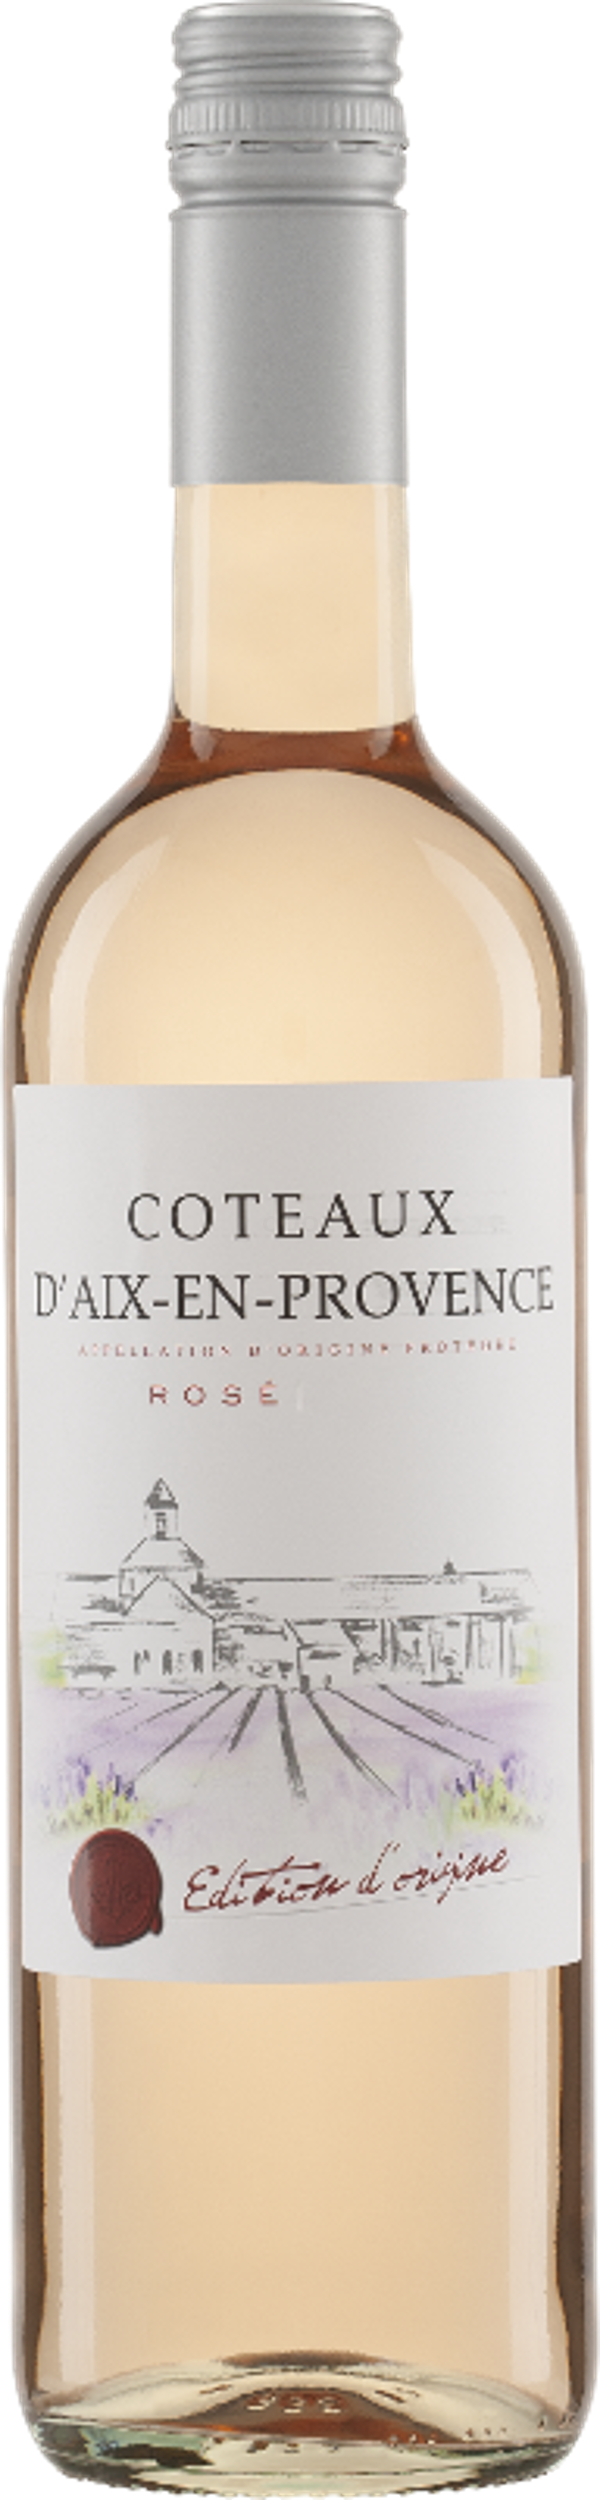 Produktfoto zu Coteaux d'Aix-en-Provence Rosé AOP ÉDITION D'ORIGINE, trocken - 0,75l